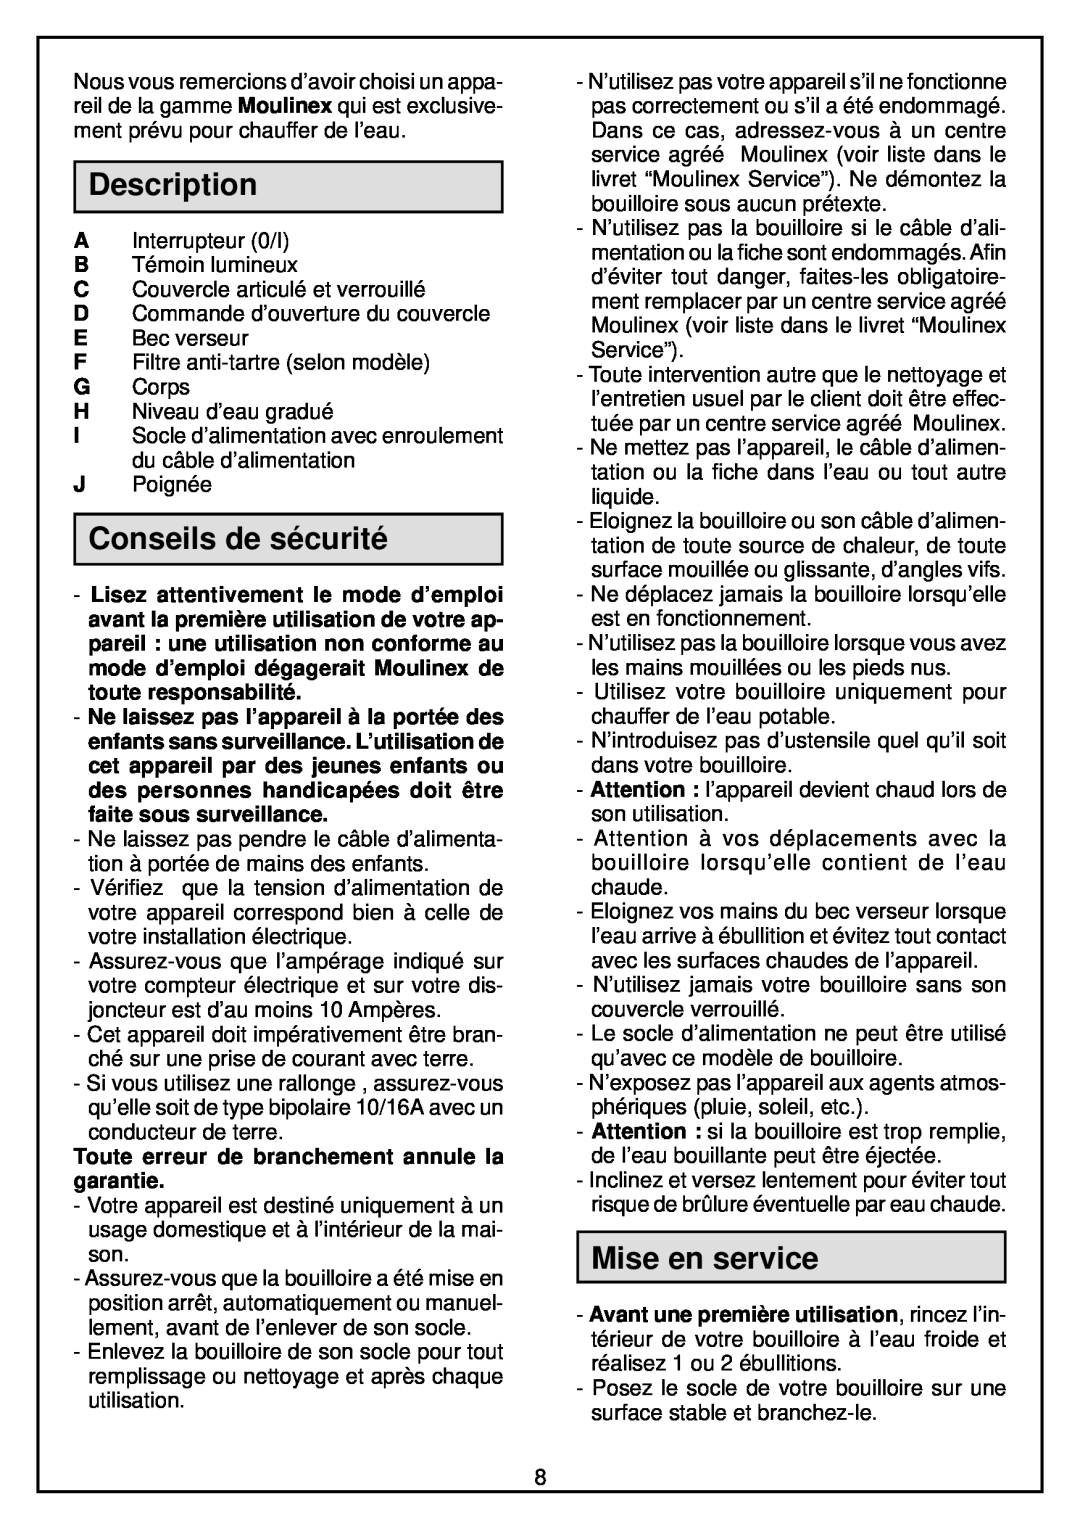 Moulinex Kettle manual Conseils de sécurité, Mise en service, Toute erreur de branchement annule la garantie, Description 